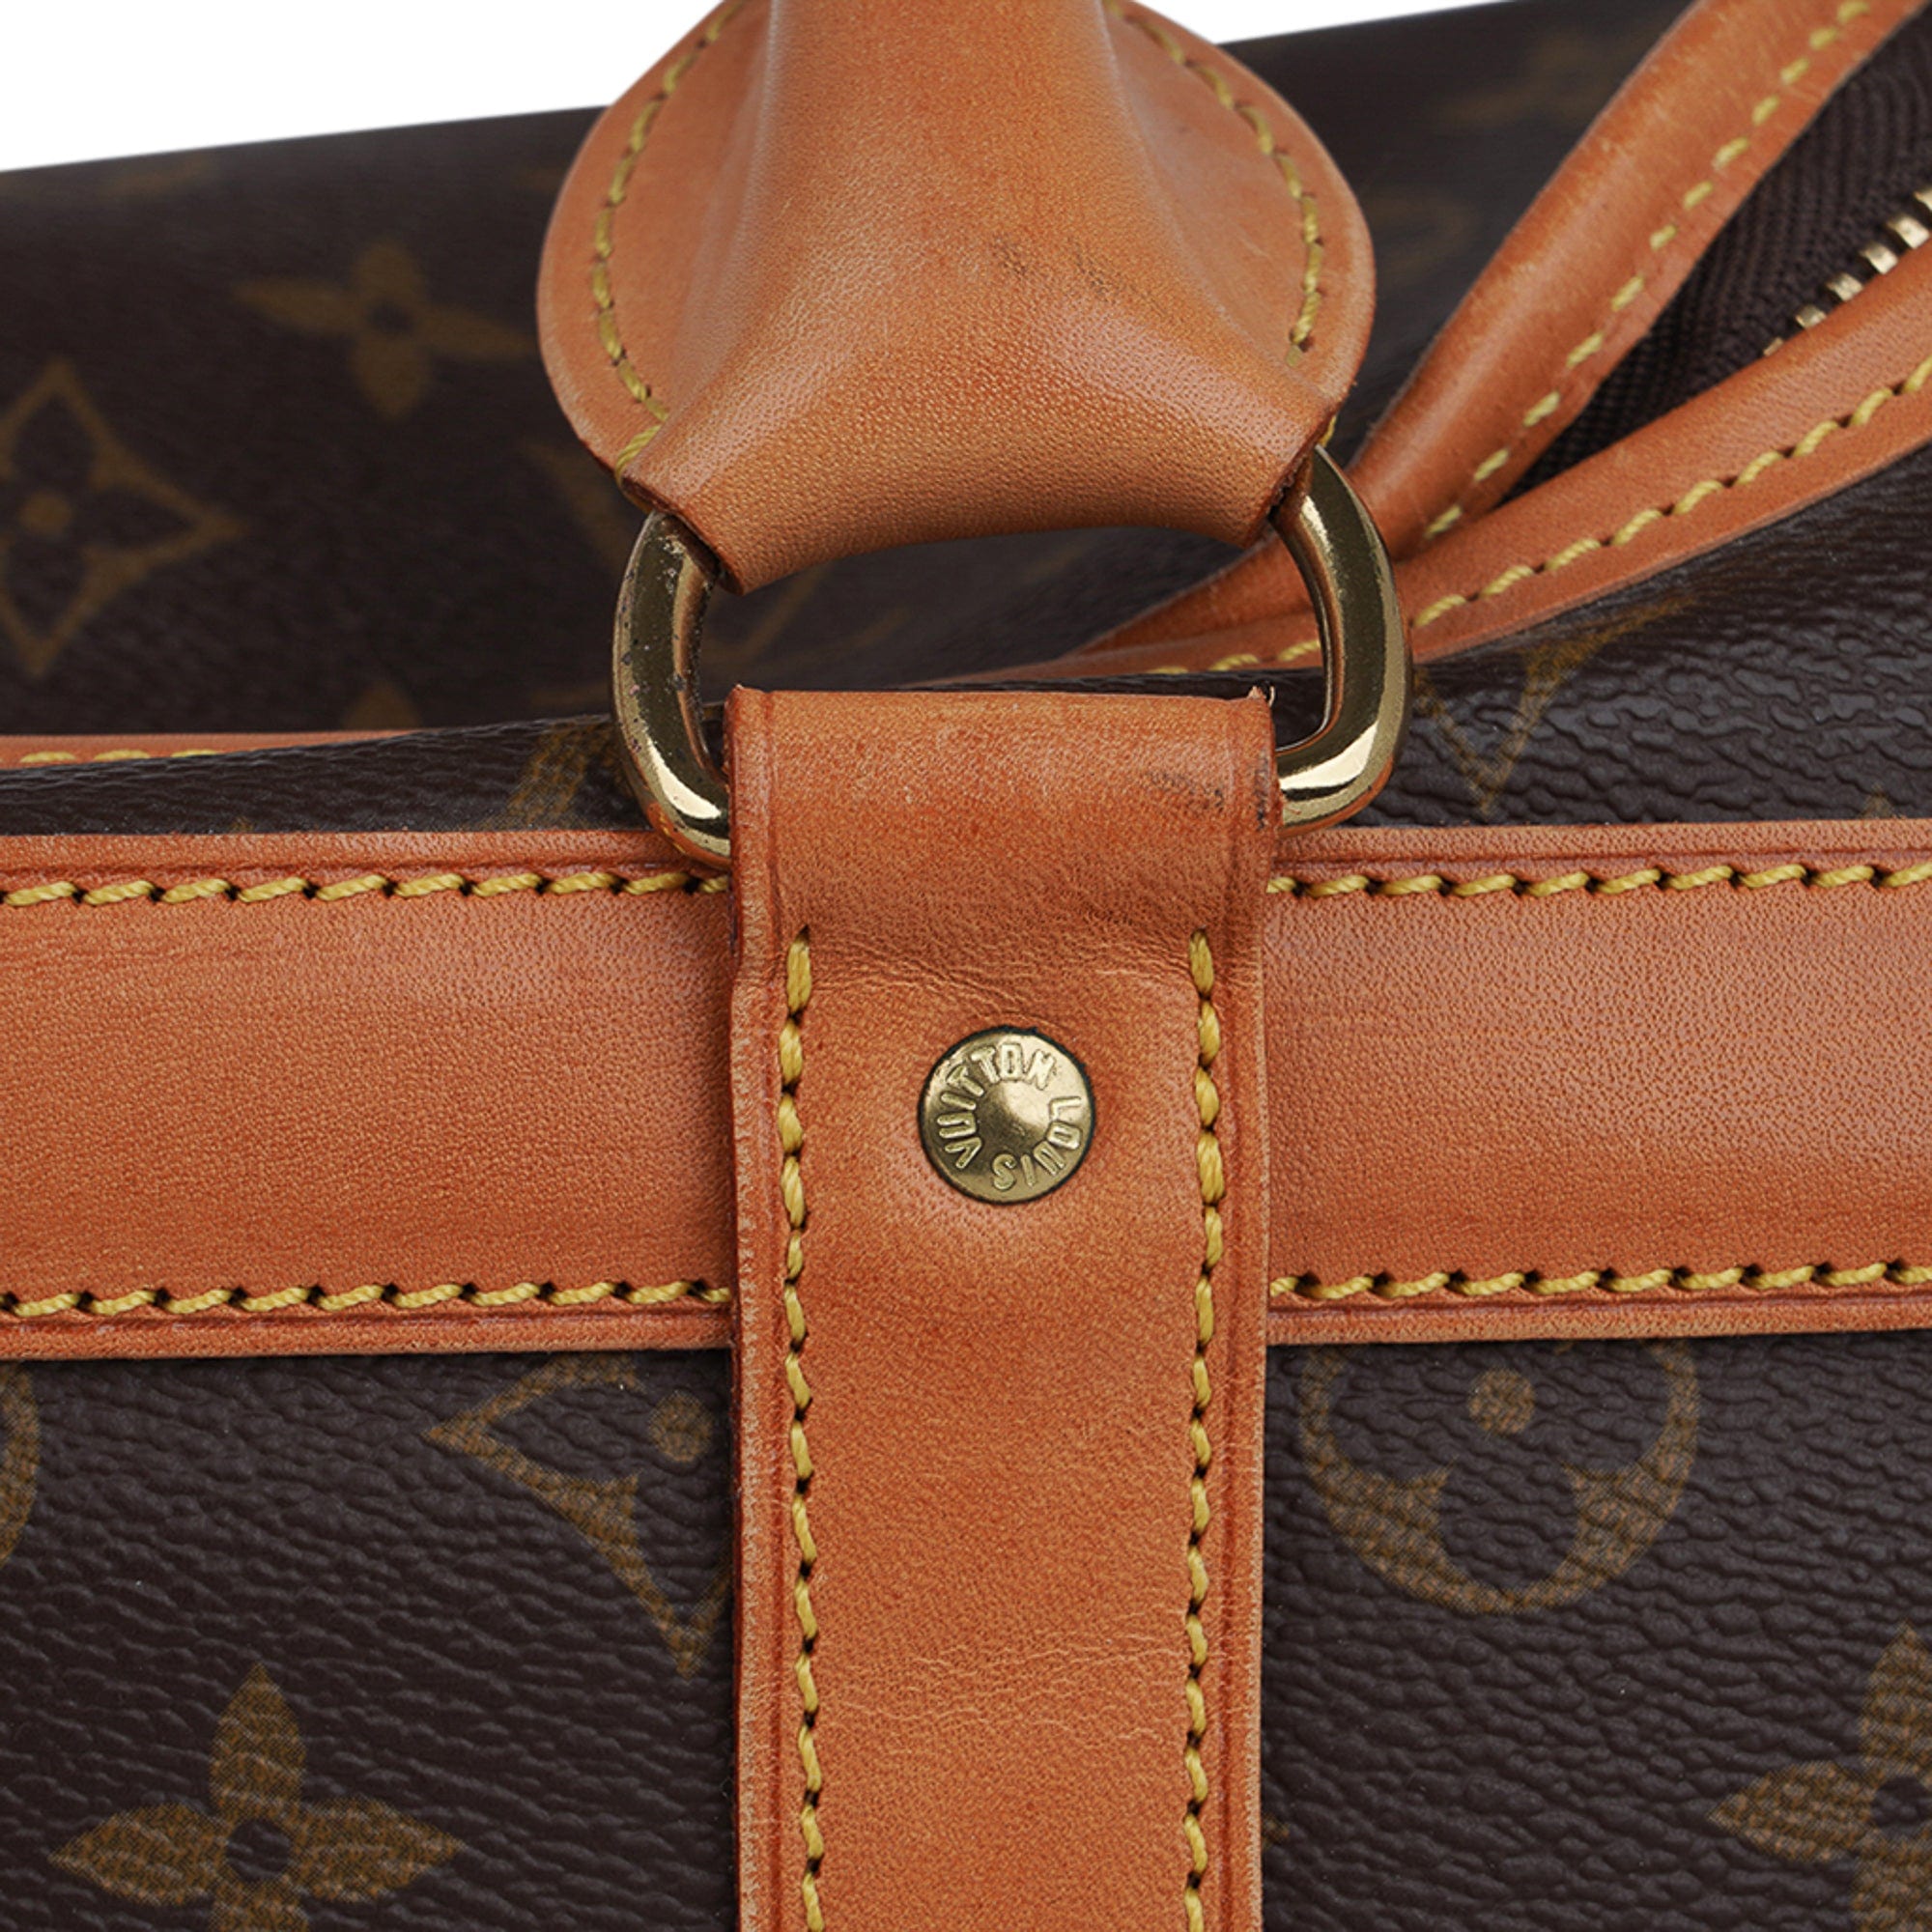 Louis Vuitton Lv Designer Pet Carrier Travel Bag